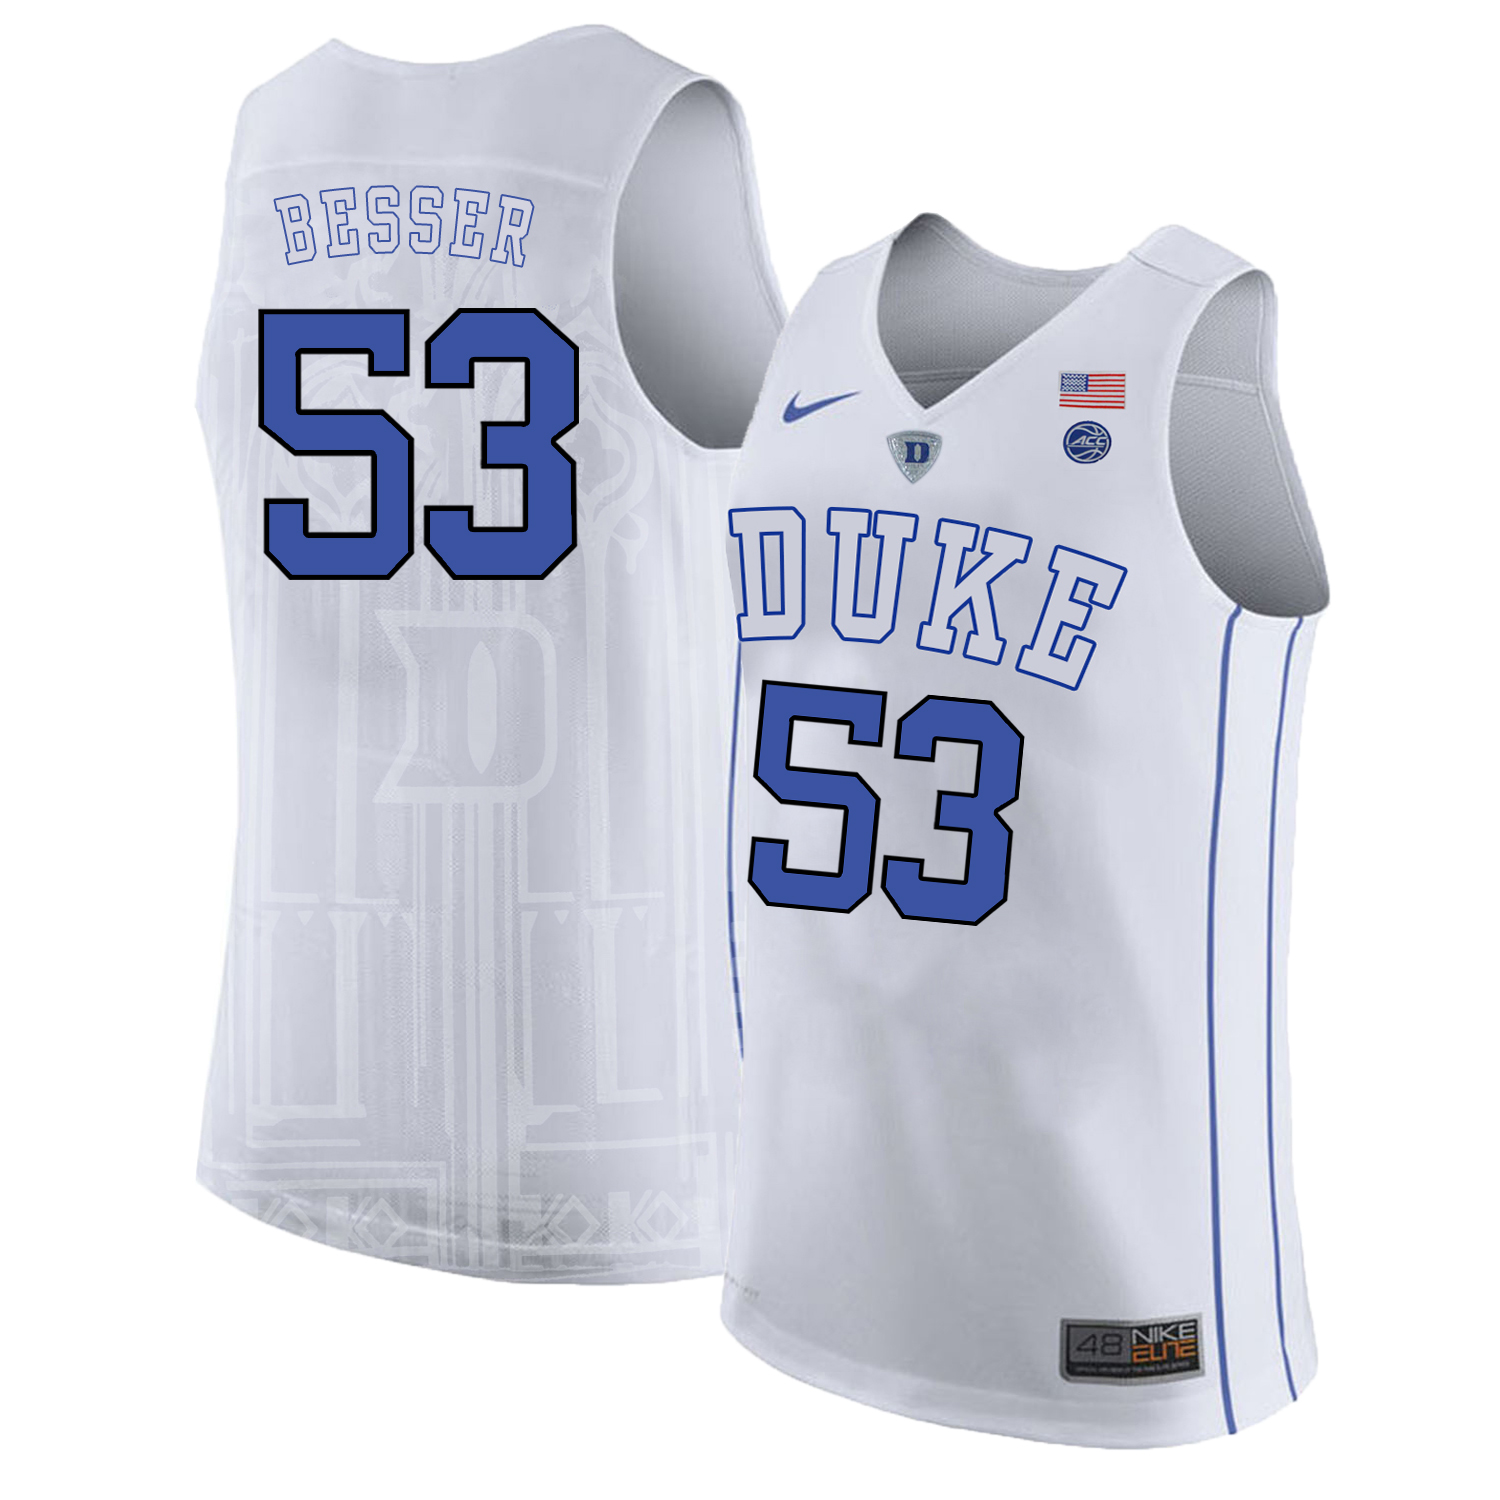 Duke Blue Devils 53 Brennan Besser White Nike College Basketball Jersey